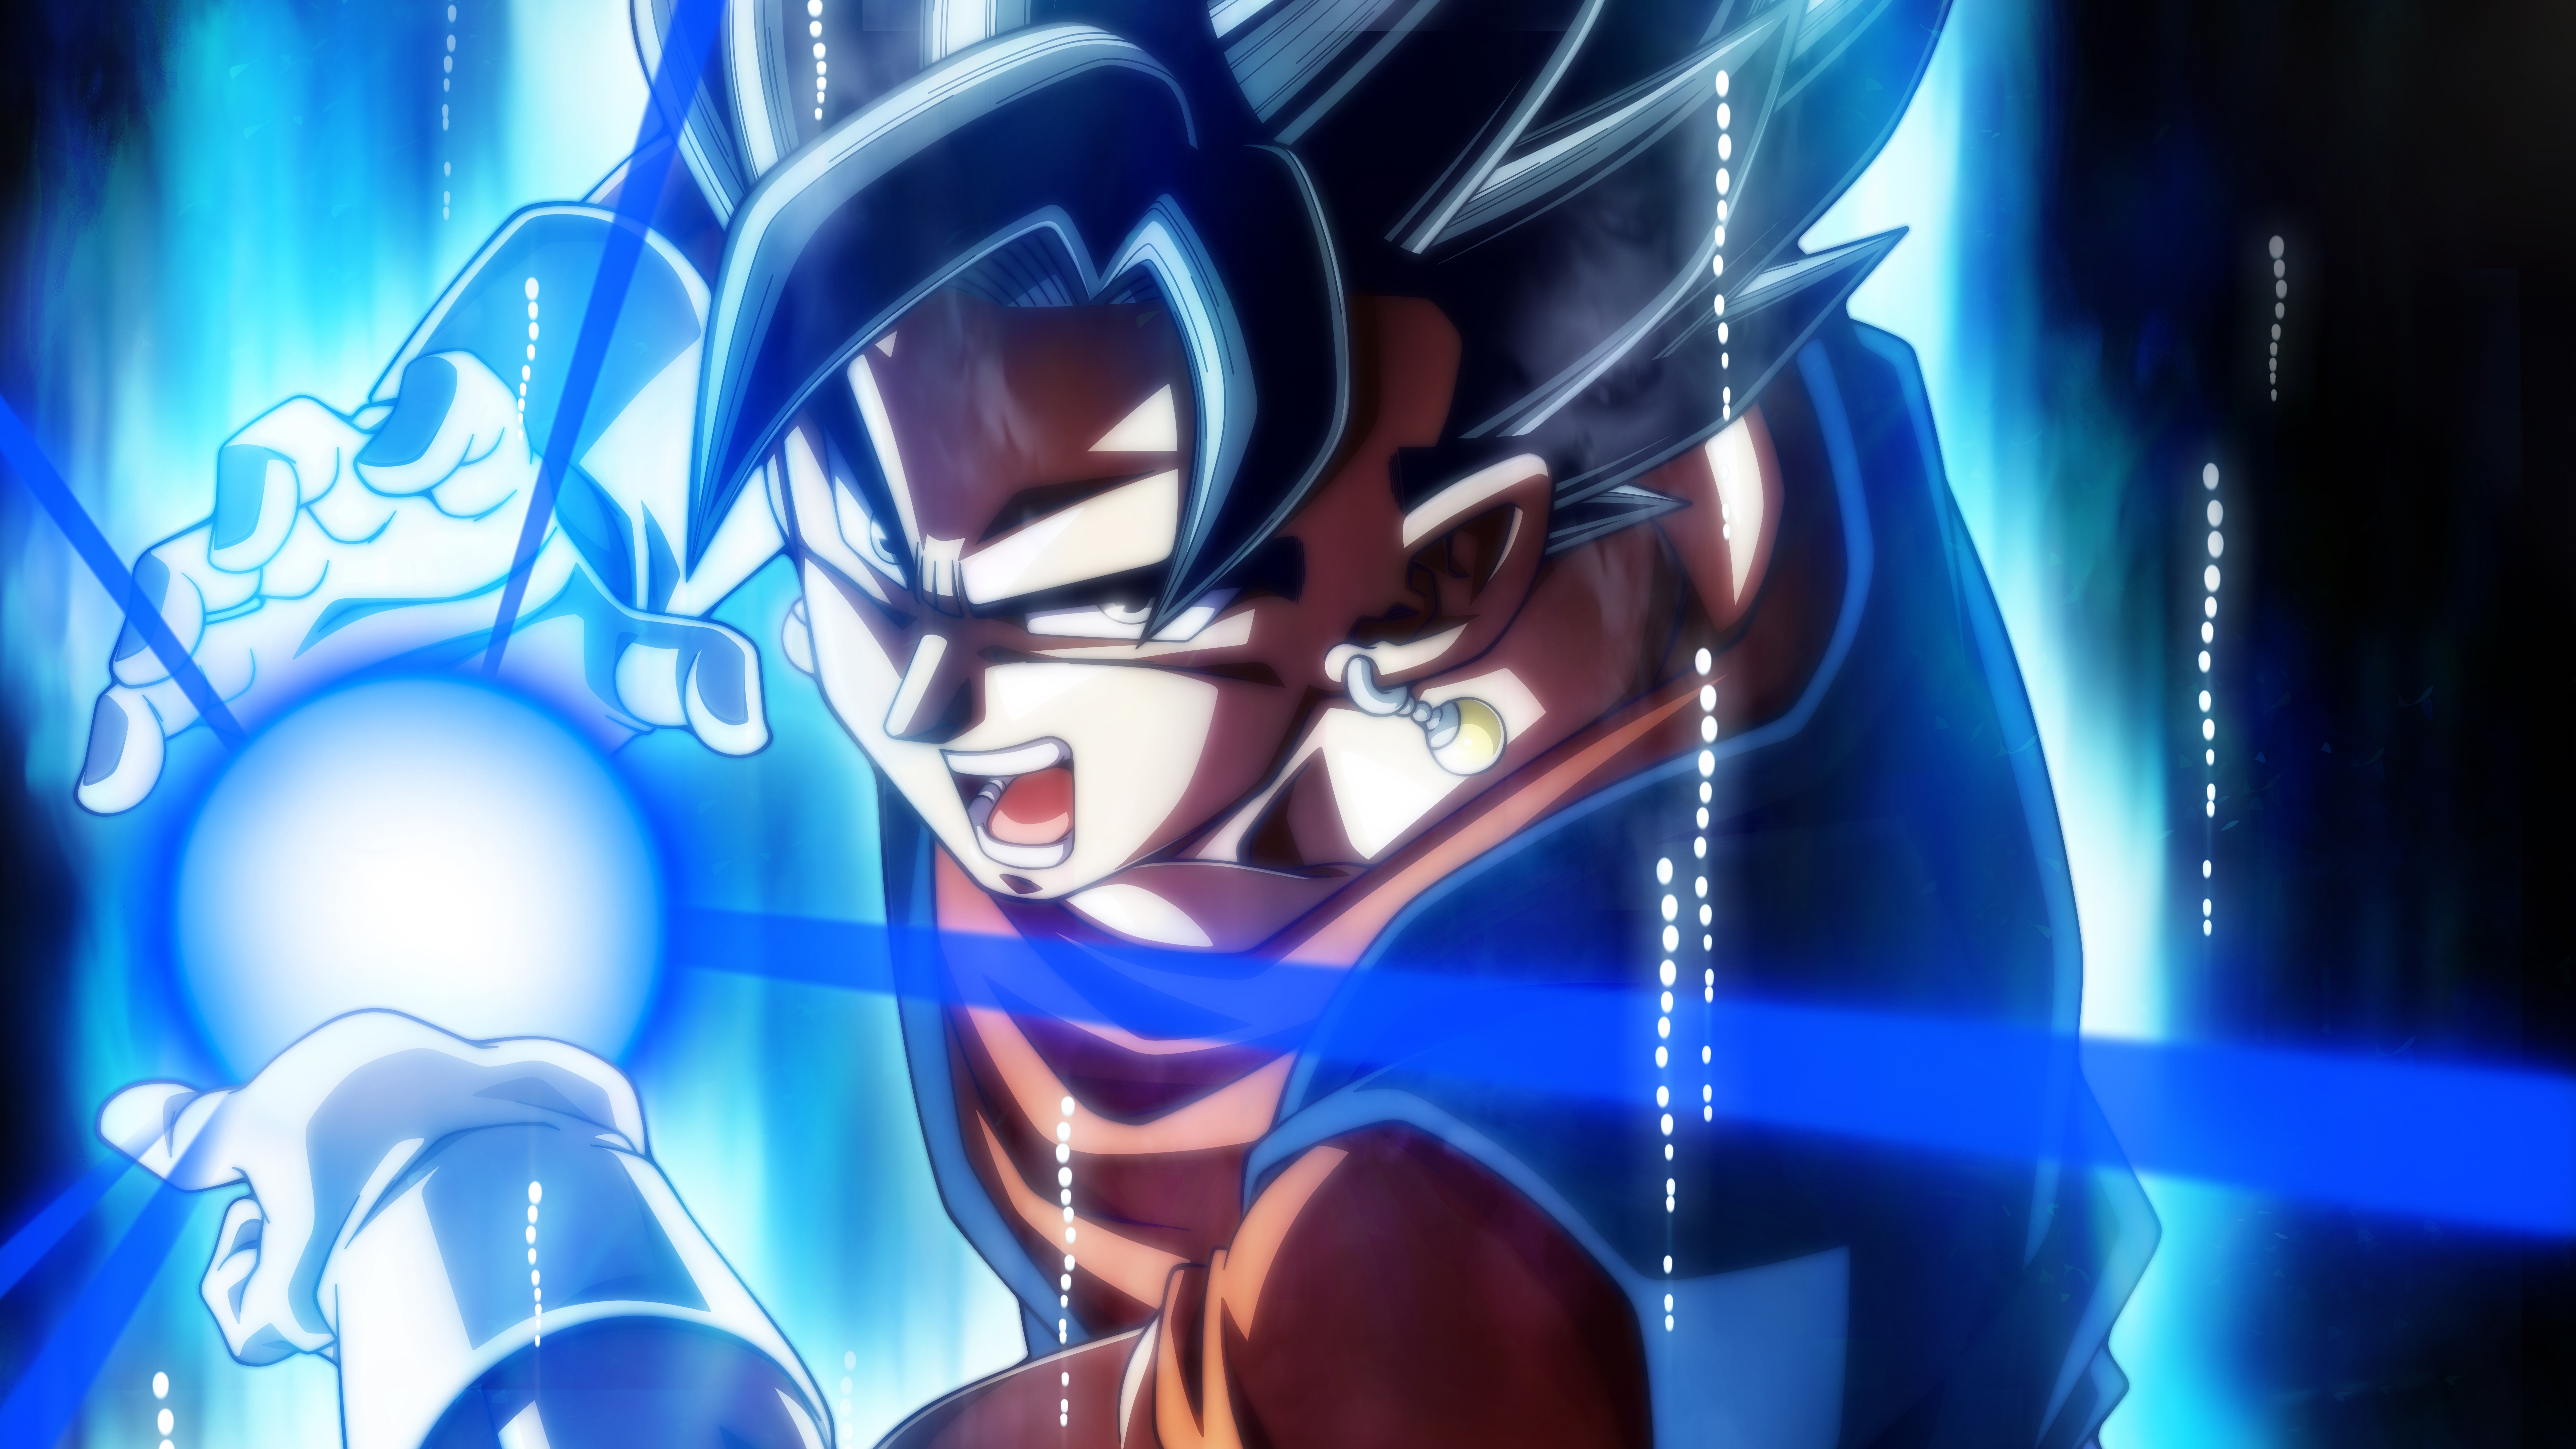 Imagenes De Goku Kamehameha , HD Wallpaper & Backgrounds